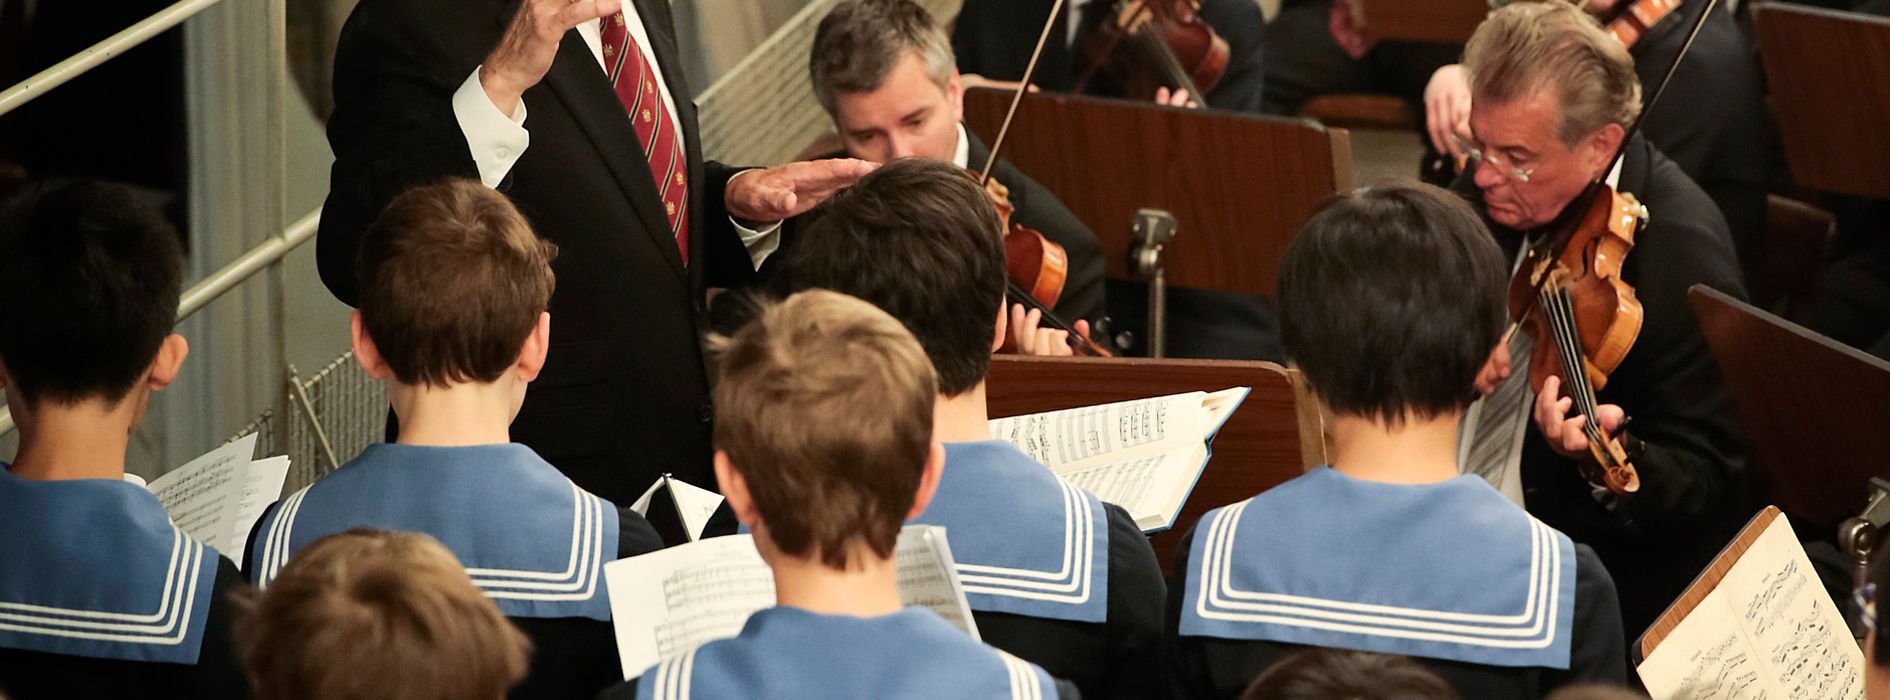 Concert des Petits Chanteurs de Vienne dans une chapelle